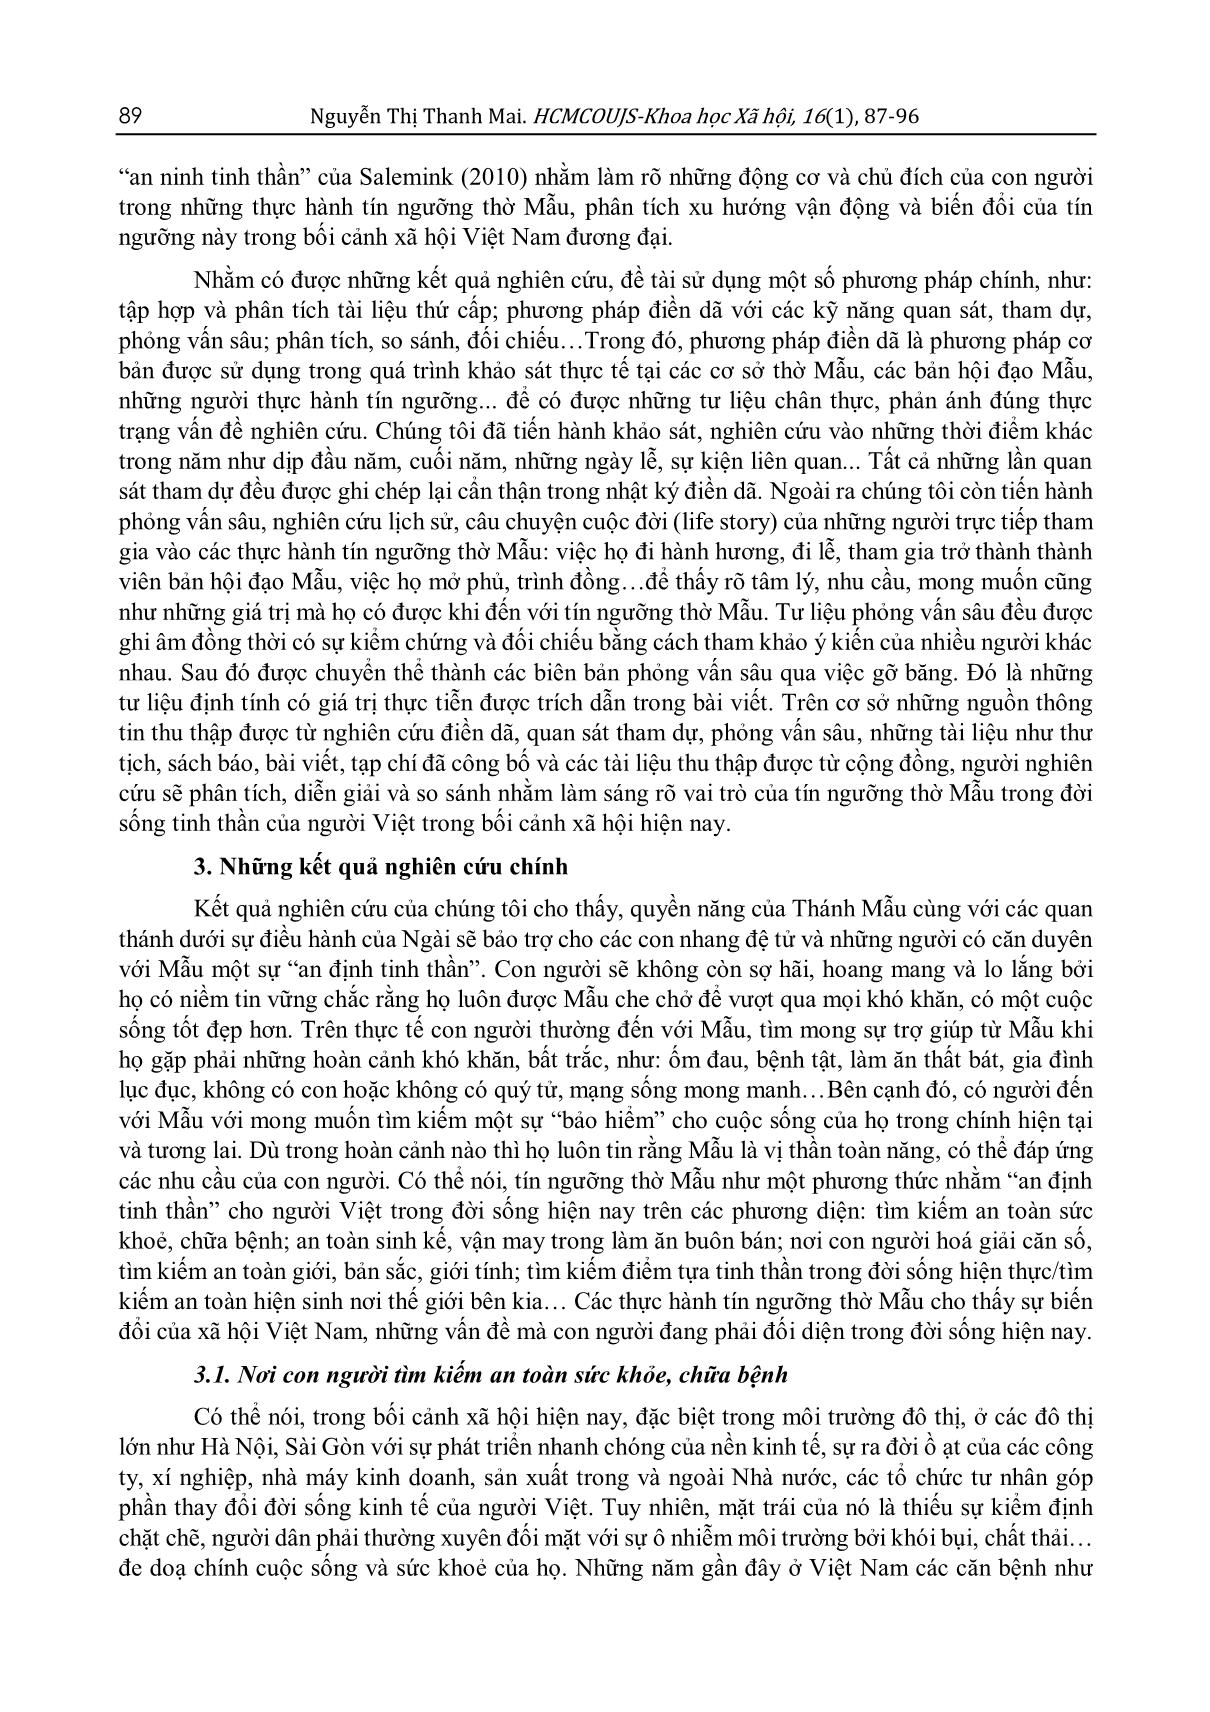 Vai trò của tín ngưỡng thờ Mẫu đối với “an ninh tinh thần” của người Việt trong đời sống xã hội hiện nay (Qua khảo sát trên địa bàn Hà Nội) trang 3